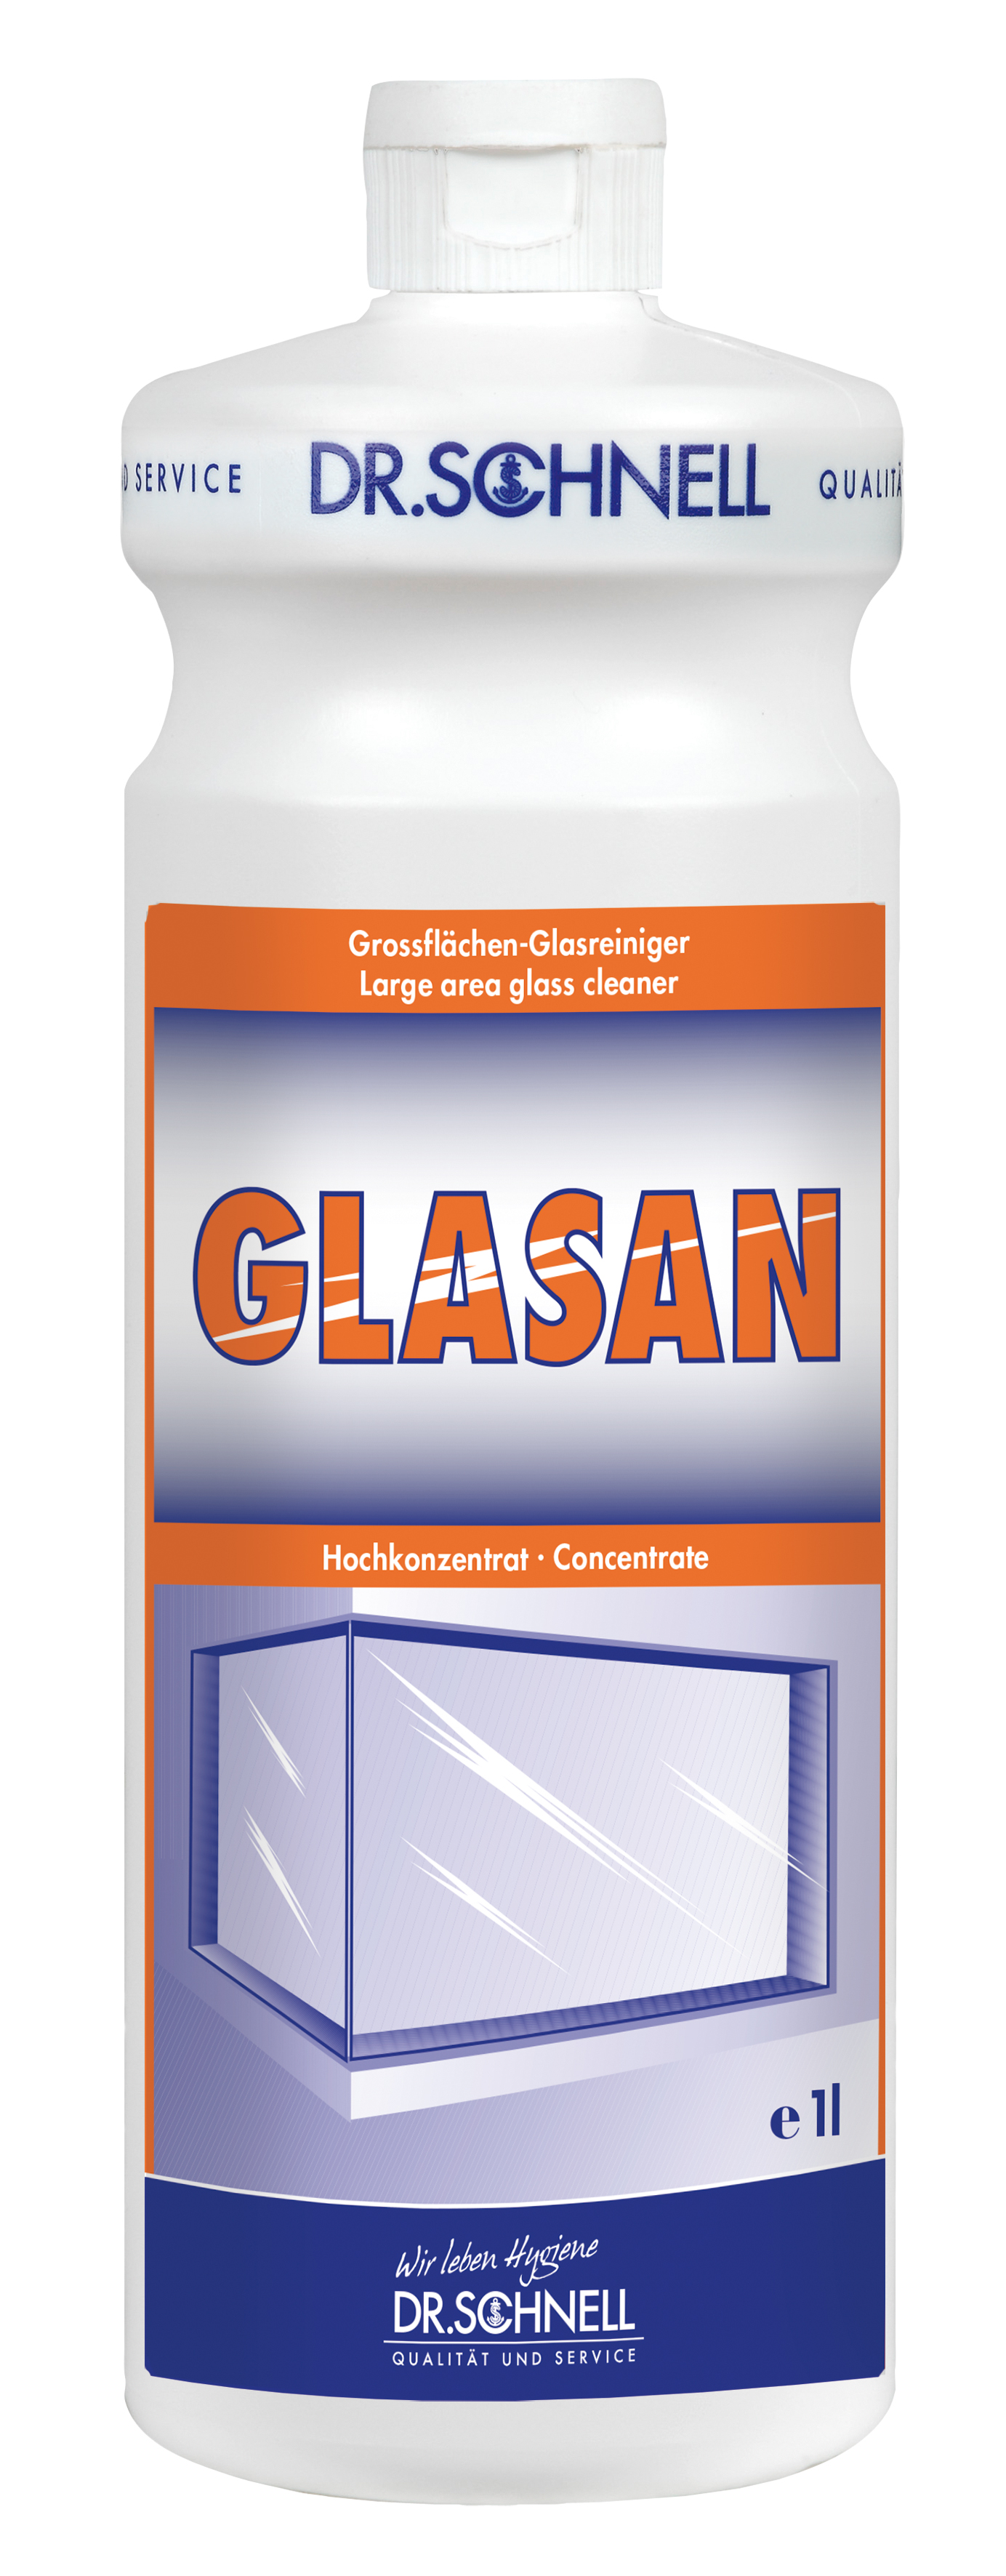 GLASAN, Glasreiniger 1 l,Dr.Schnell